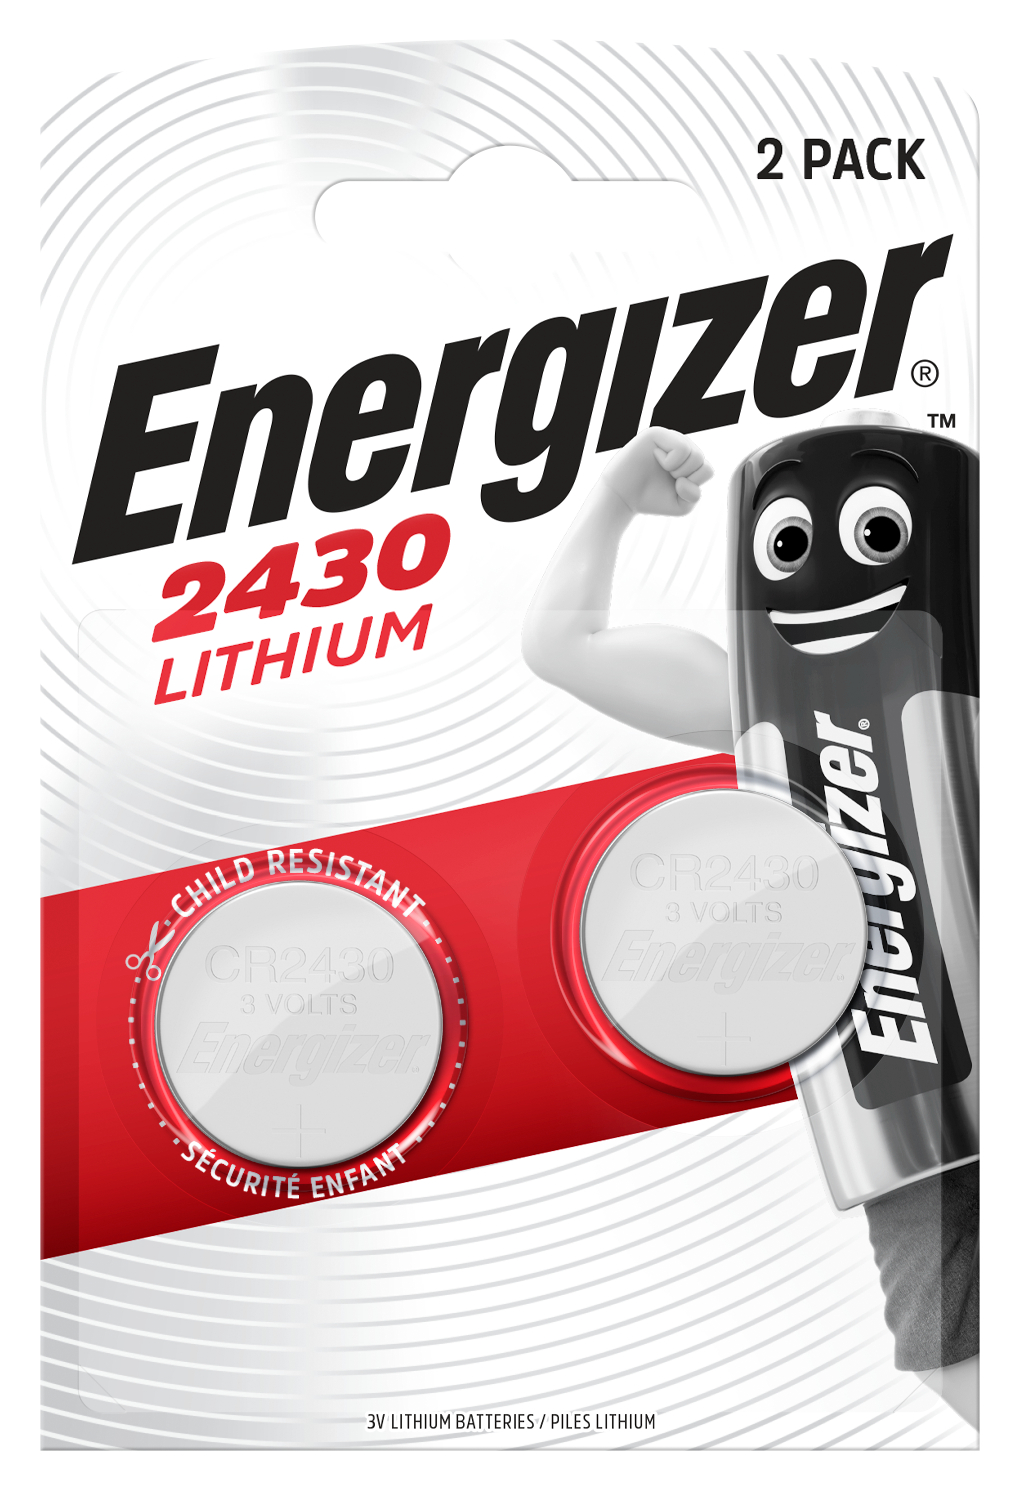 [8558866] Batteri Lithium CR2430 2p